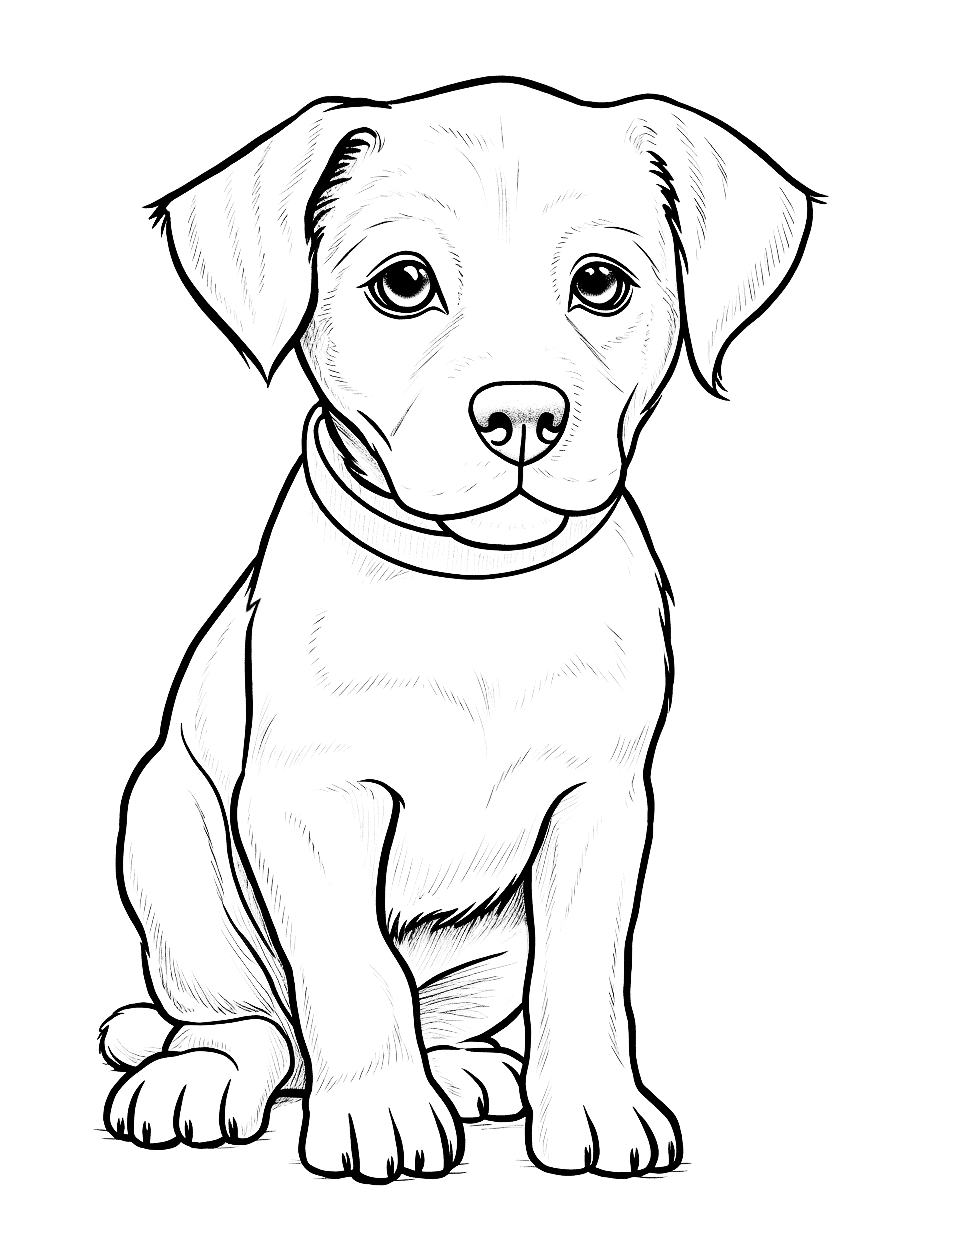 Realistic Portrait Labrador Puppy Coloring Page - A coloring sheet of a realistic-looking Labrador puppy.